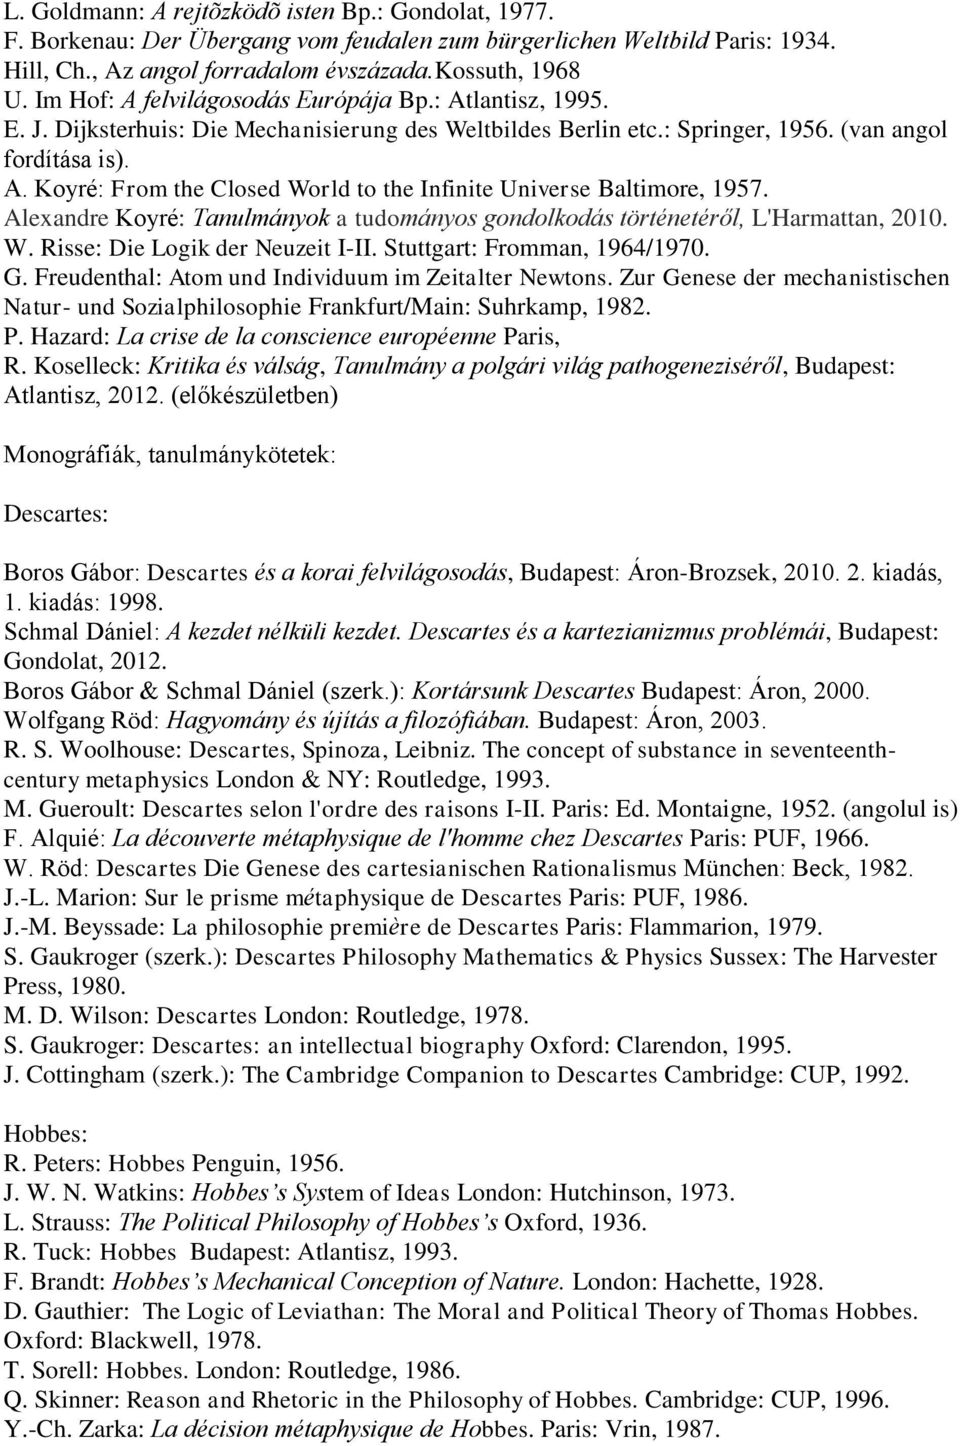 Alexandre Koyré: Tanulmányok a tudományos gondolkodás történetéről, L'Harmattan, 2010. W. Risse: Die Logik der Neuzeit I-II. Stuttgart: Fromman, 1964/1970. G.